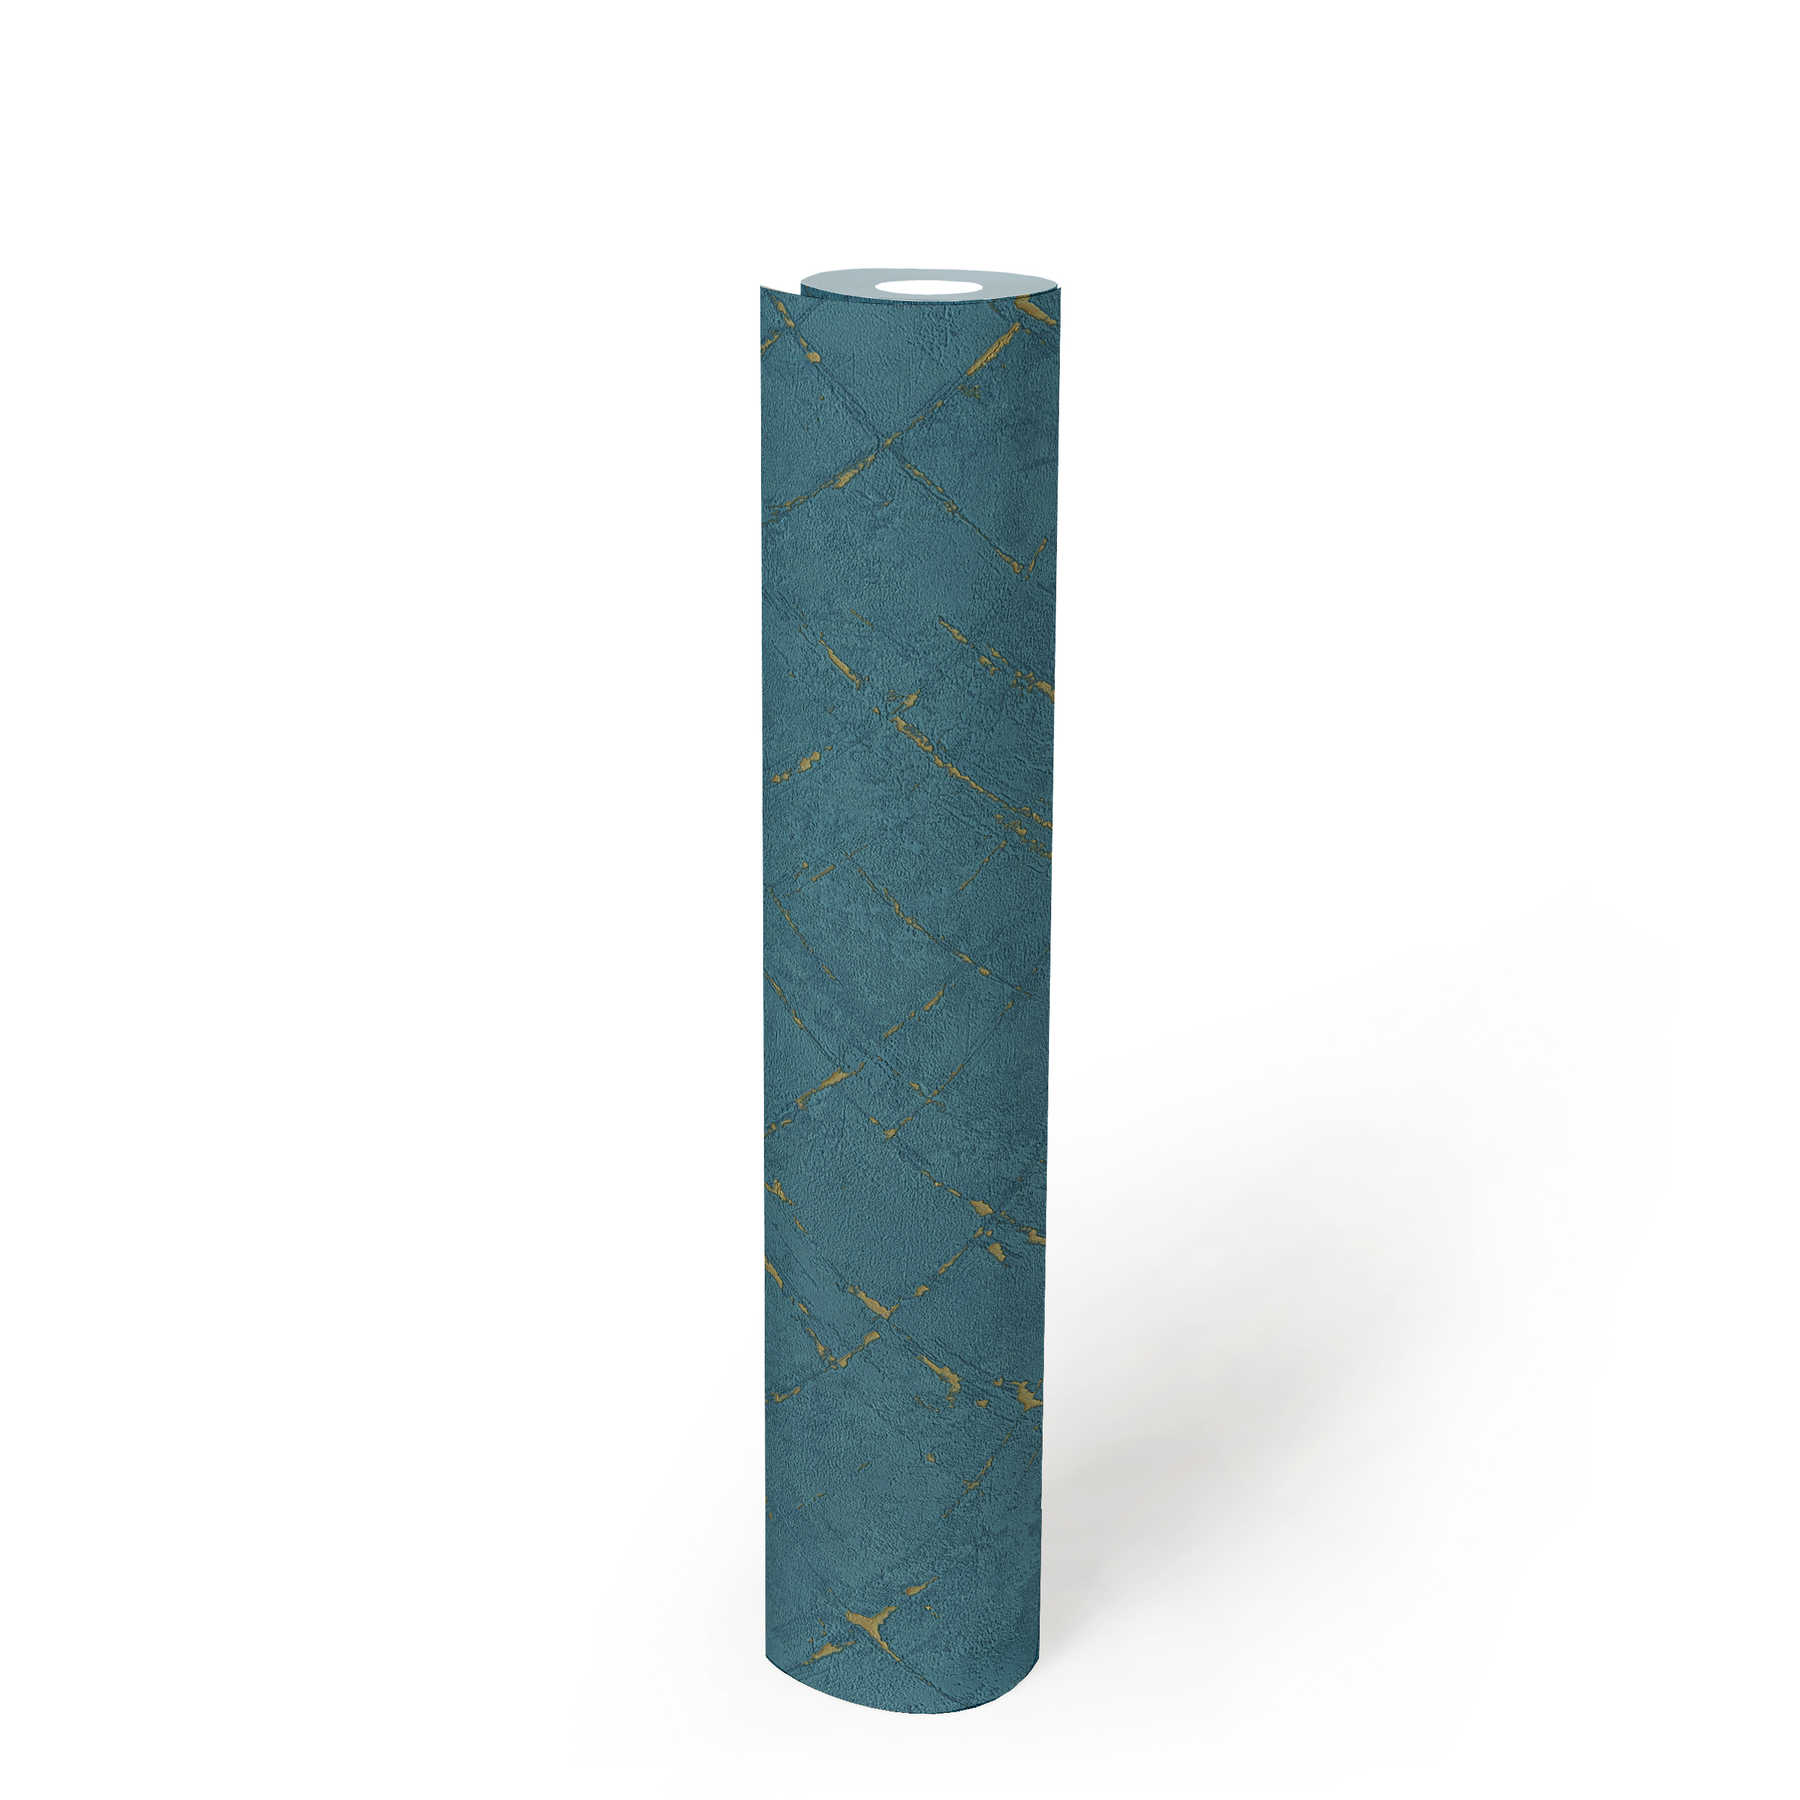             Papel pintado con aspecto de yeso y efecto metálico - azul, dorado
        